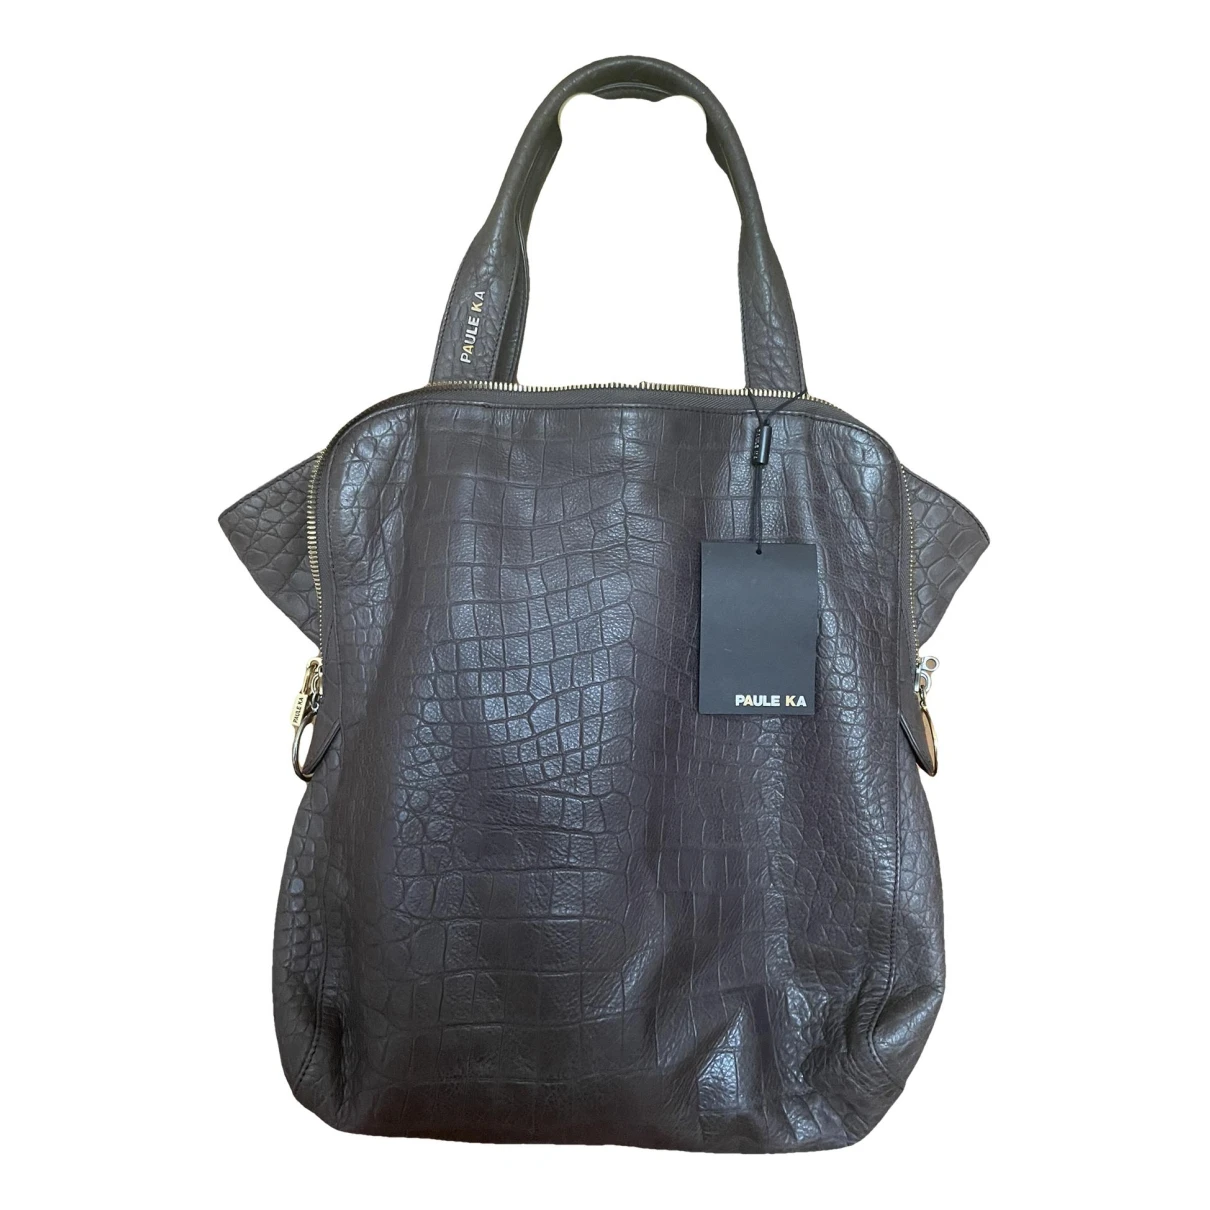 Pre-owned Paule Ka Leather Handbag In Brown